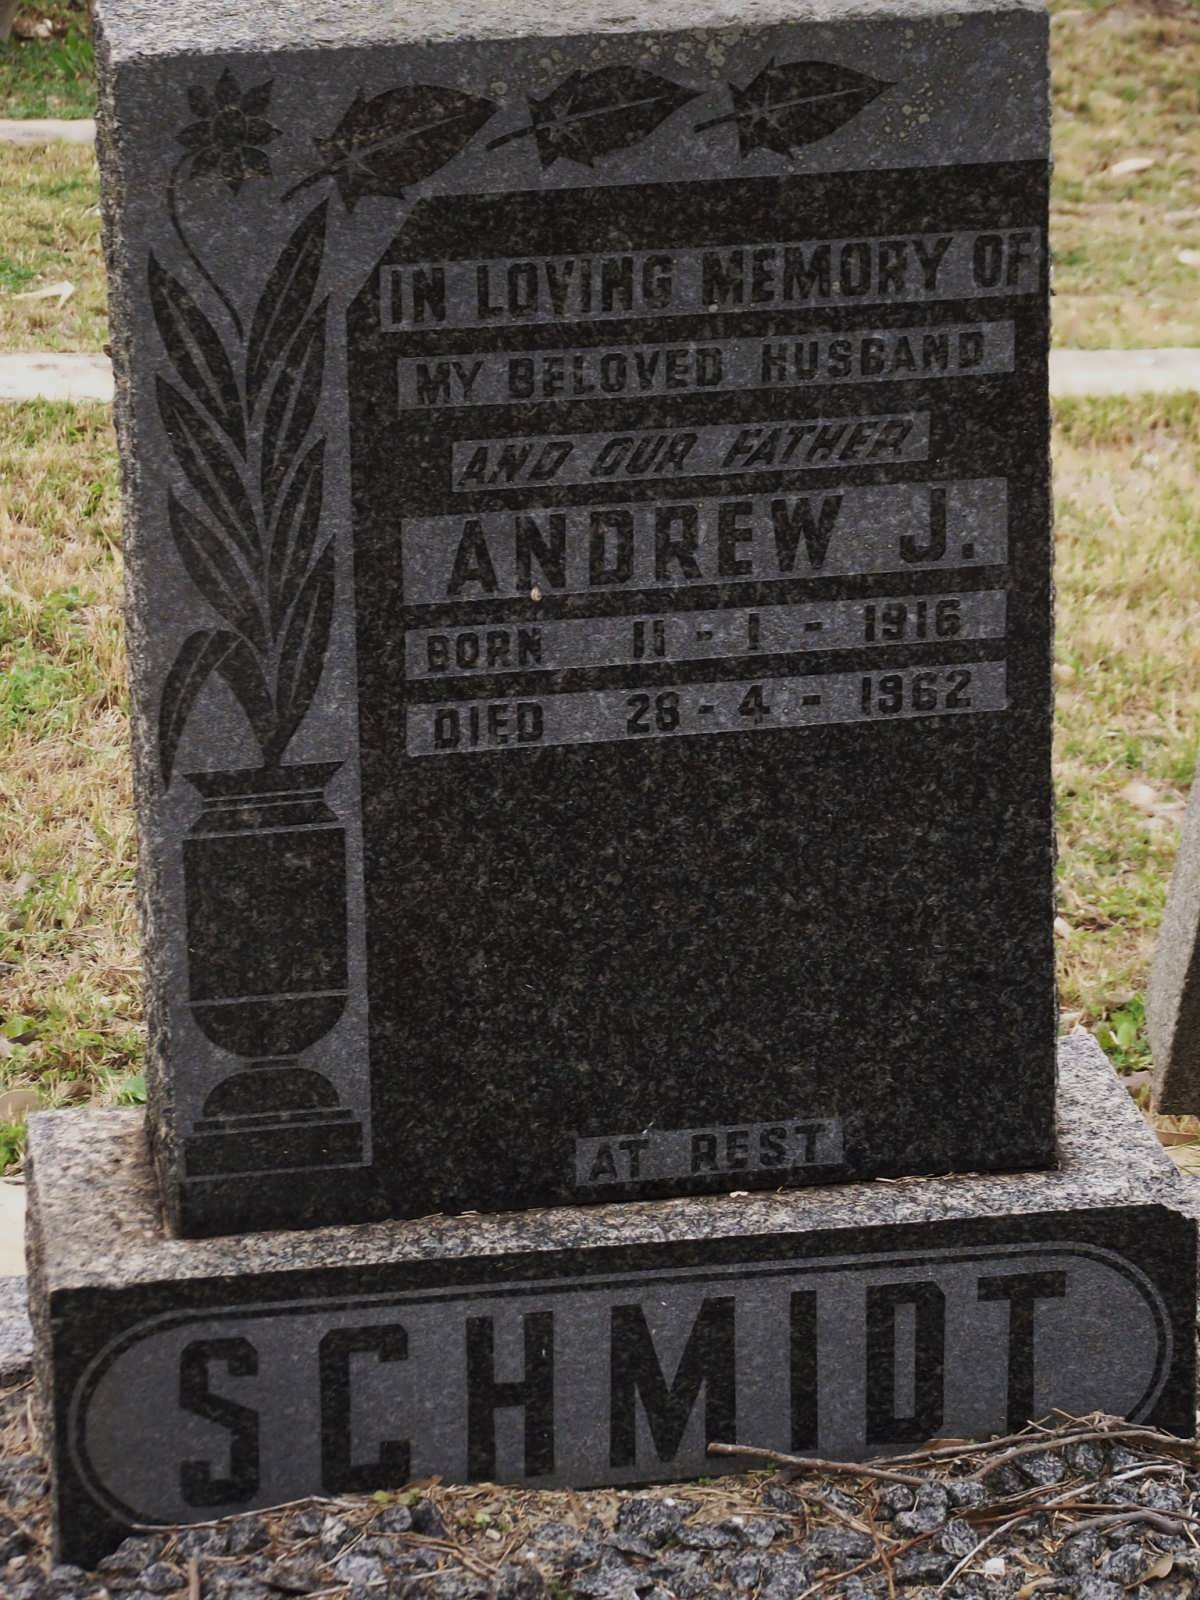 SCHMIDT Andrew J. 1916-1962